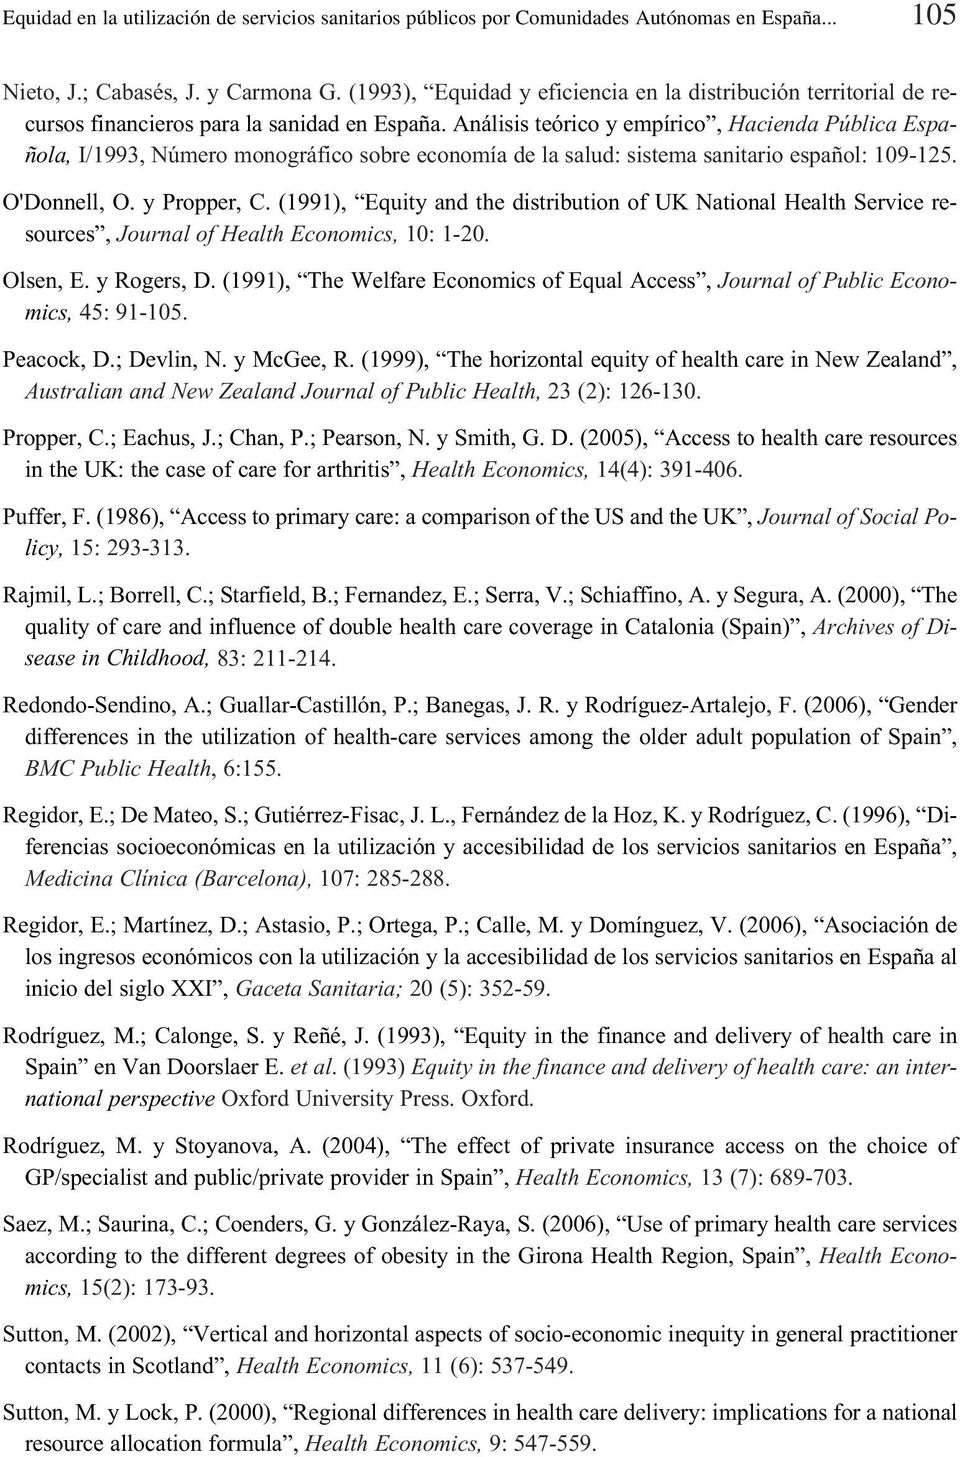 Análisis teórico y empírico, Hacienda Pública Española, I/1993, Número monográfico sobre economía de la salud: sistema sanitario español: 109-125. O'Donnell, O. y Propper, C.